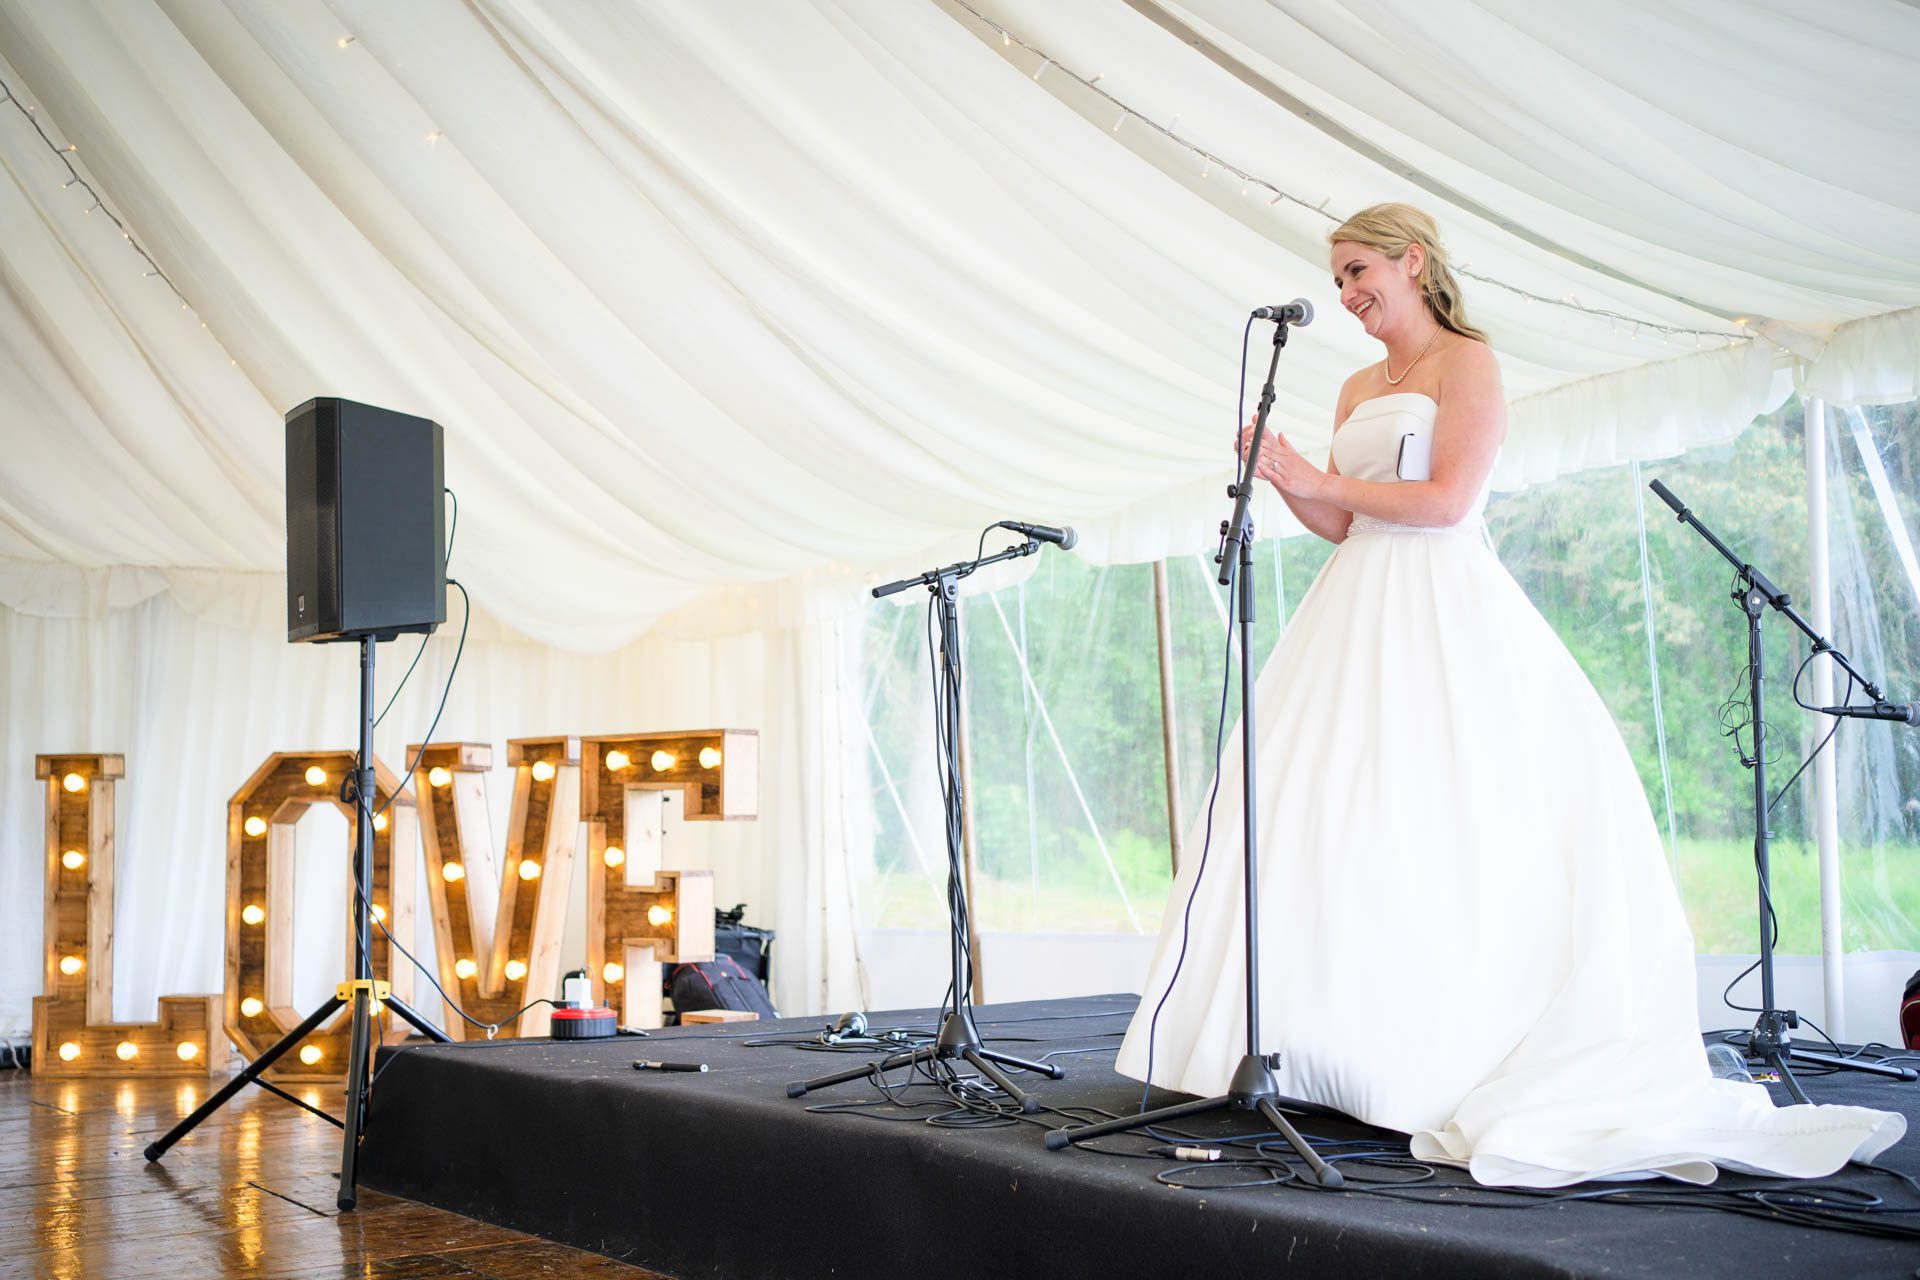 The bride making her wedding speech